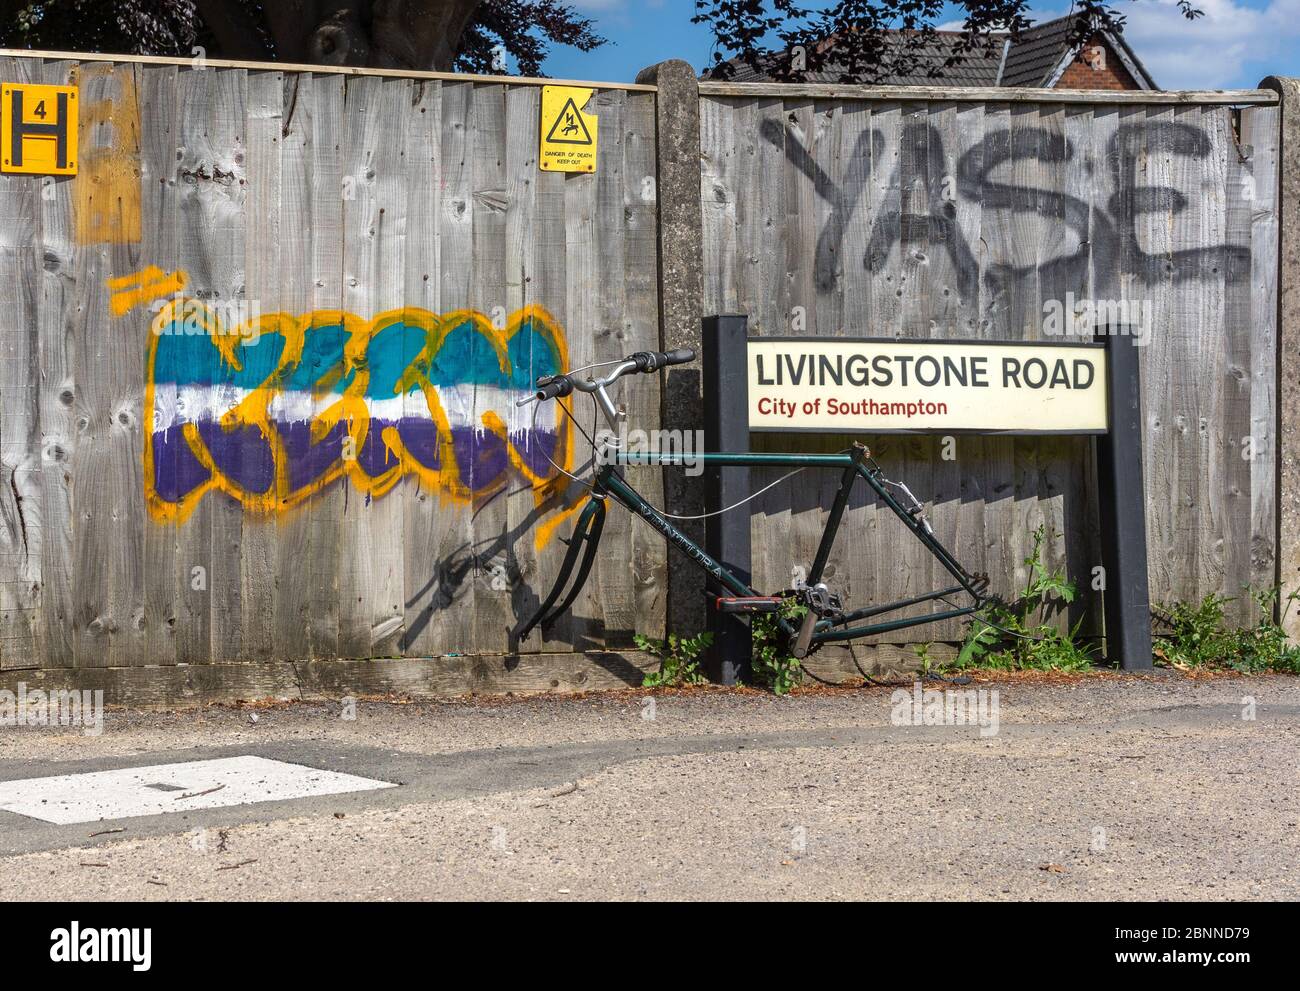 Fahrradrahmen ohne Räder, die an einem Straßenschild befestigt sind, vermutlich nach Diebstahl in der englischen Stadt Southampton, Großbritannien Stockfoto